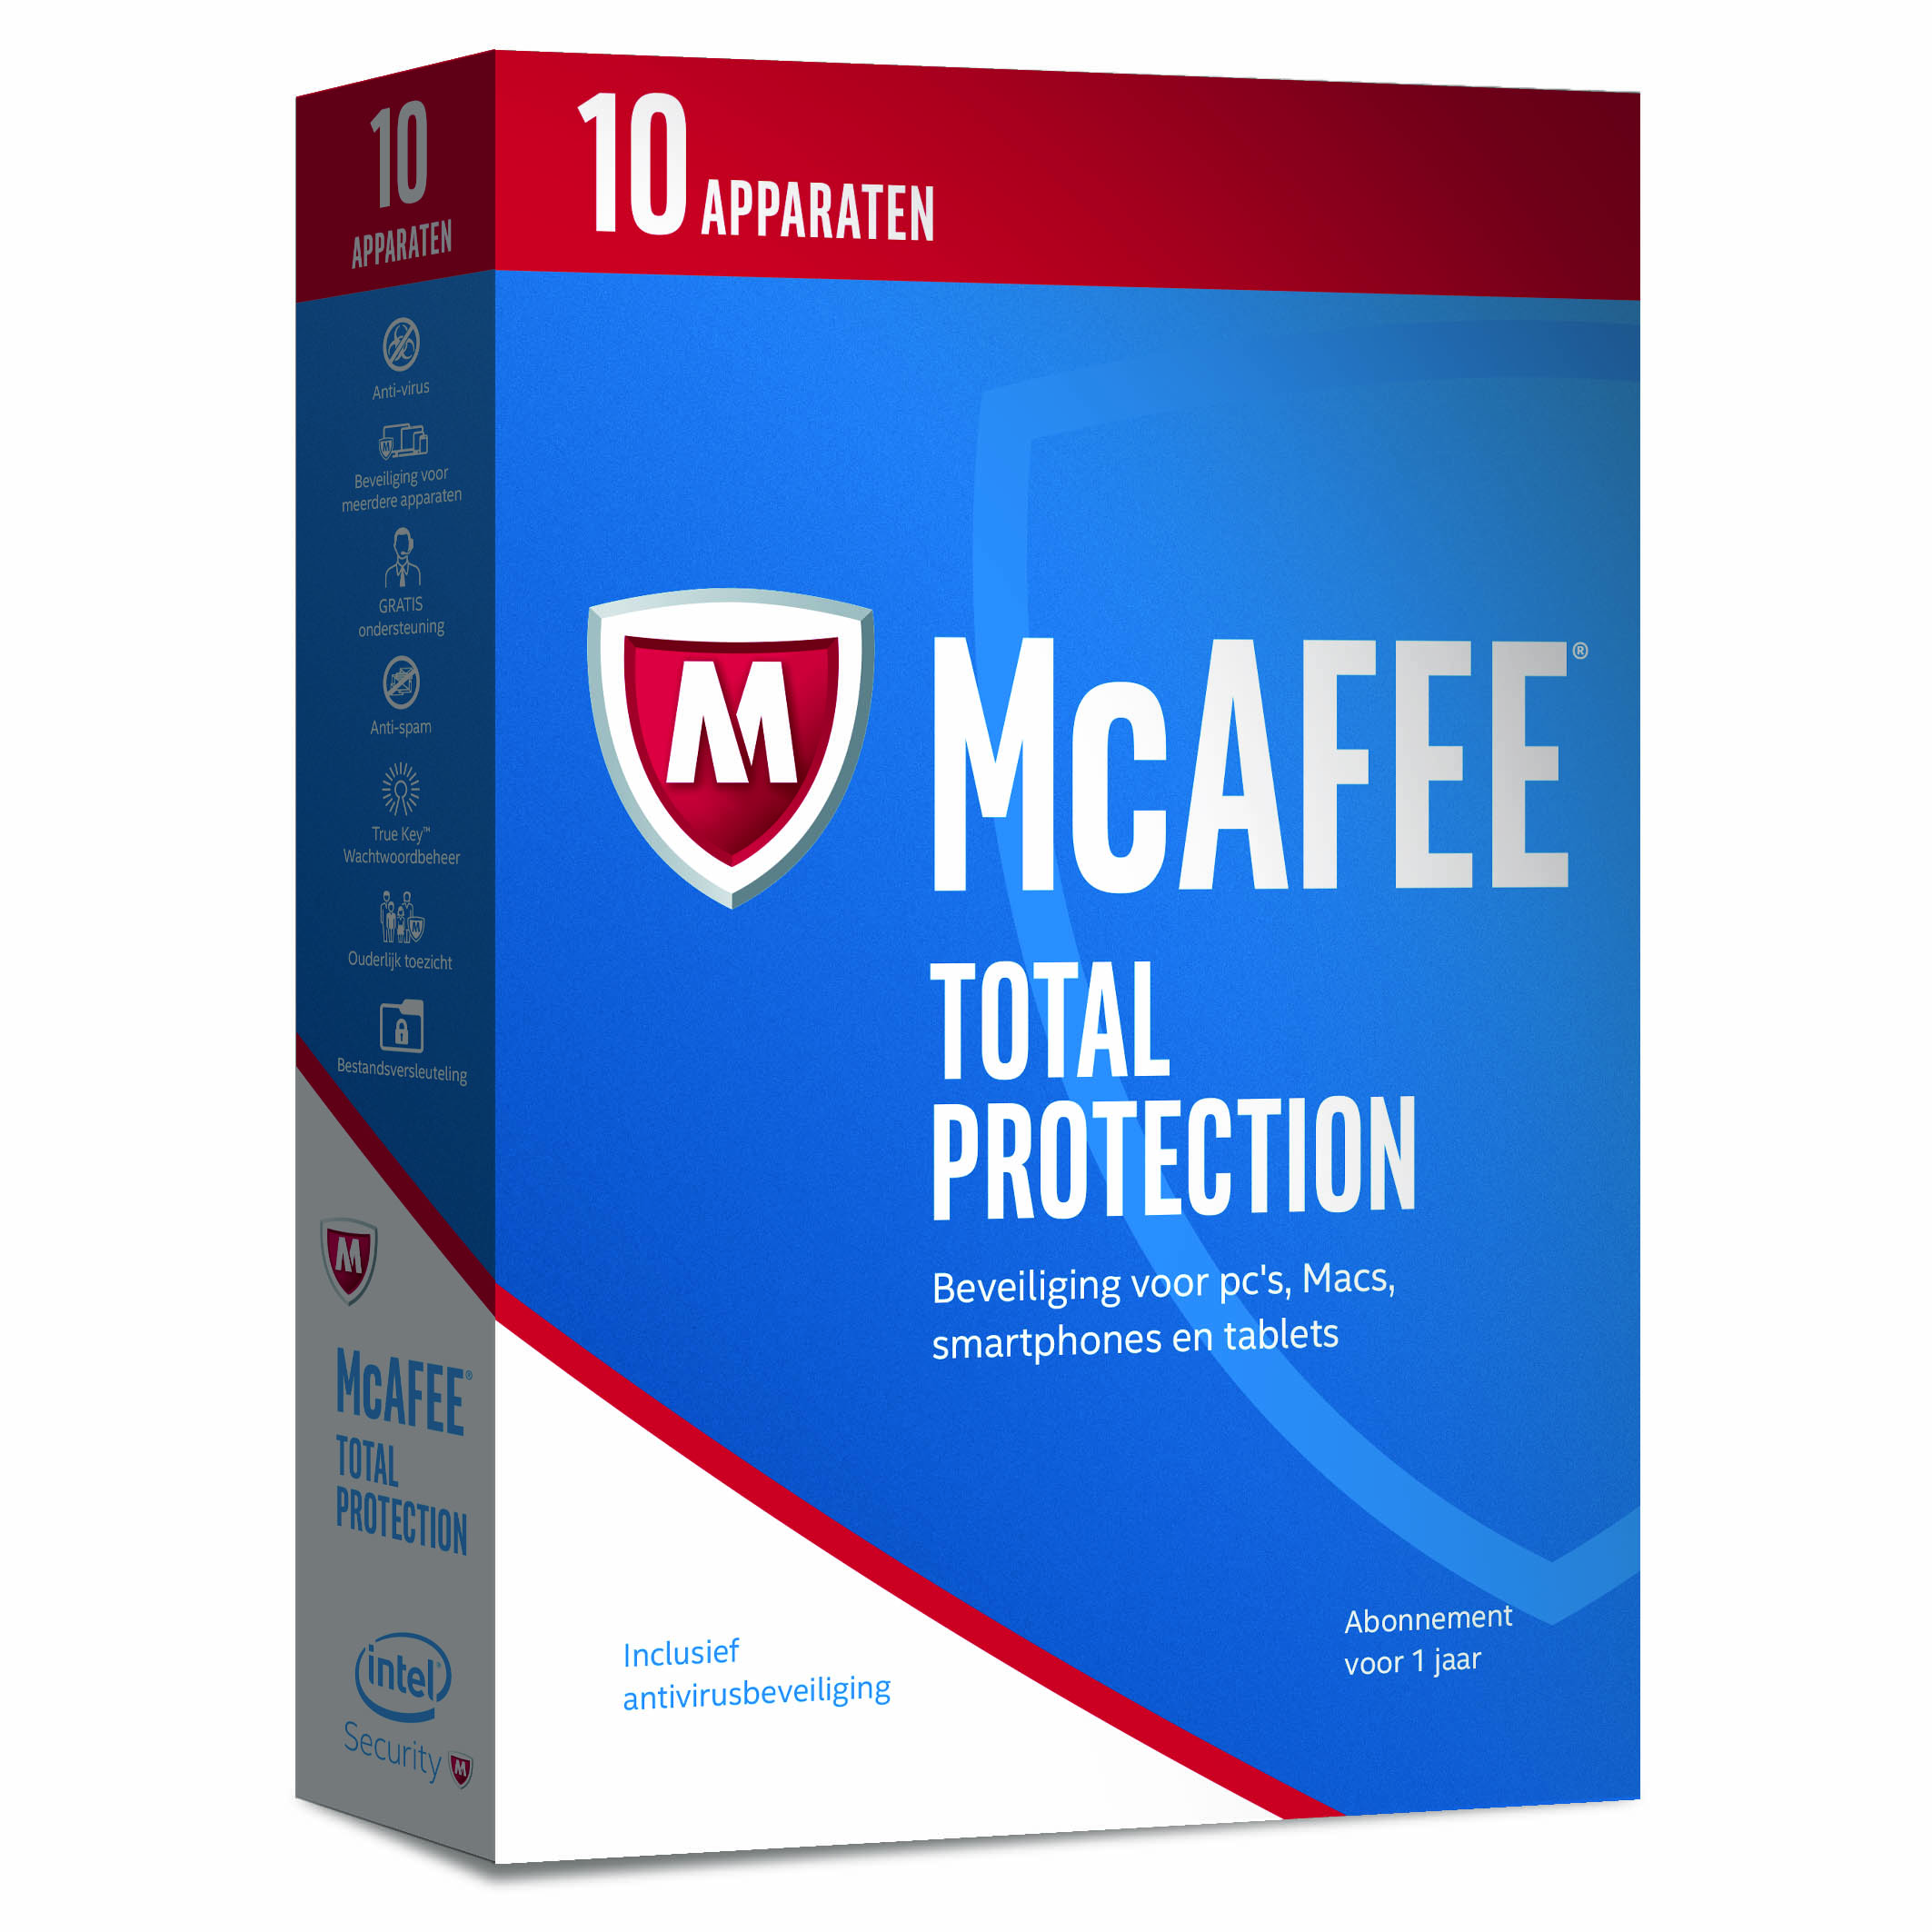 Nieuwe antivirussoftware van McAfee is gebruiksvriendelijker en veiliger